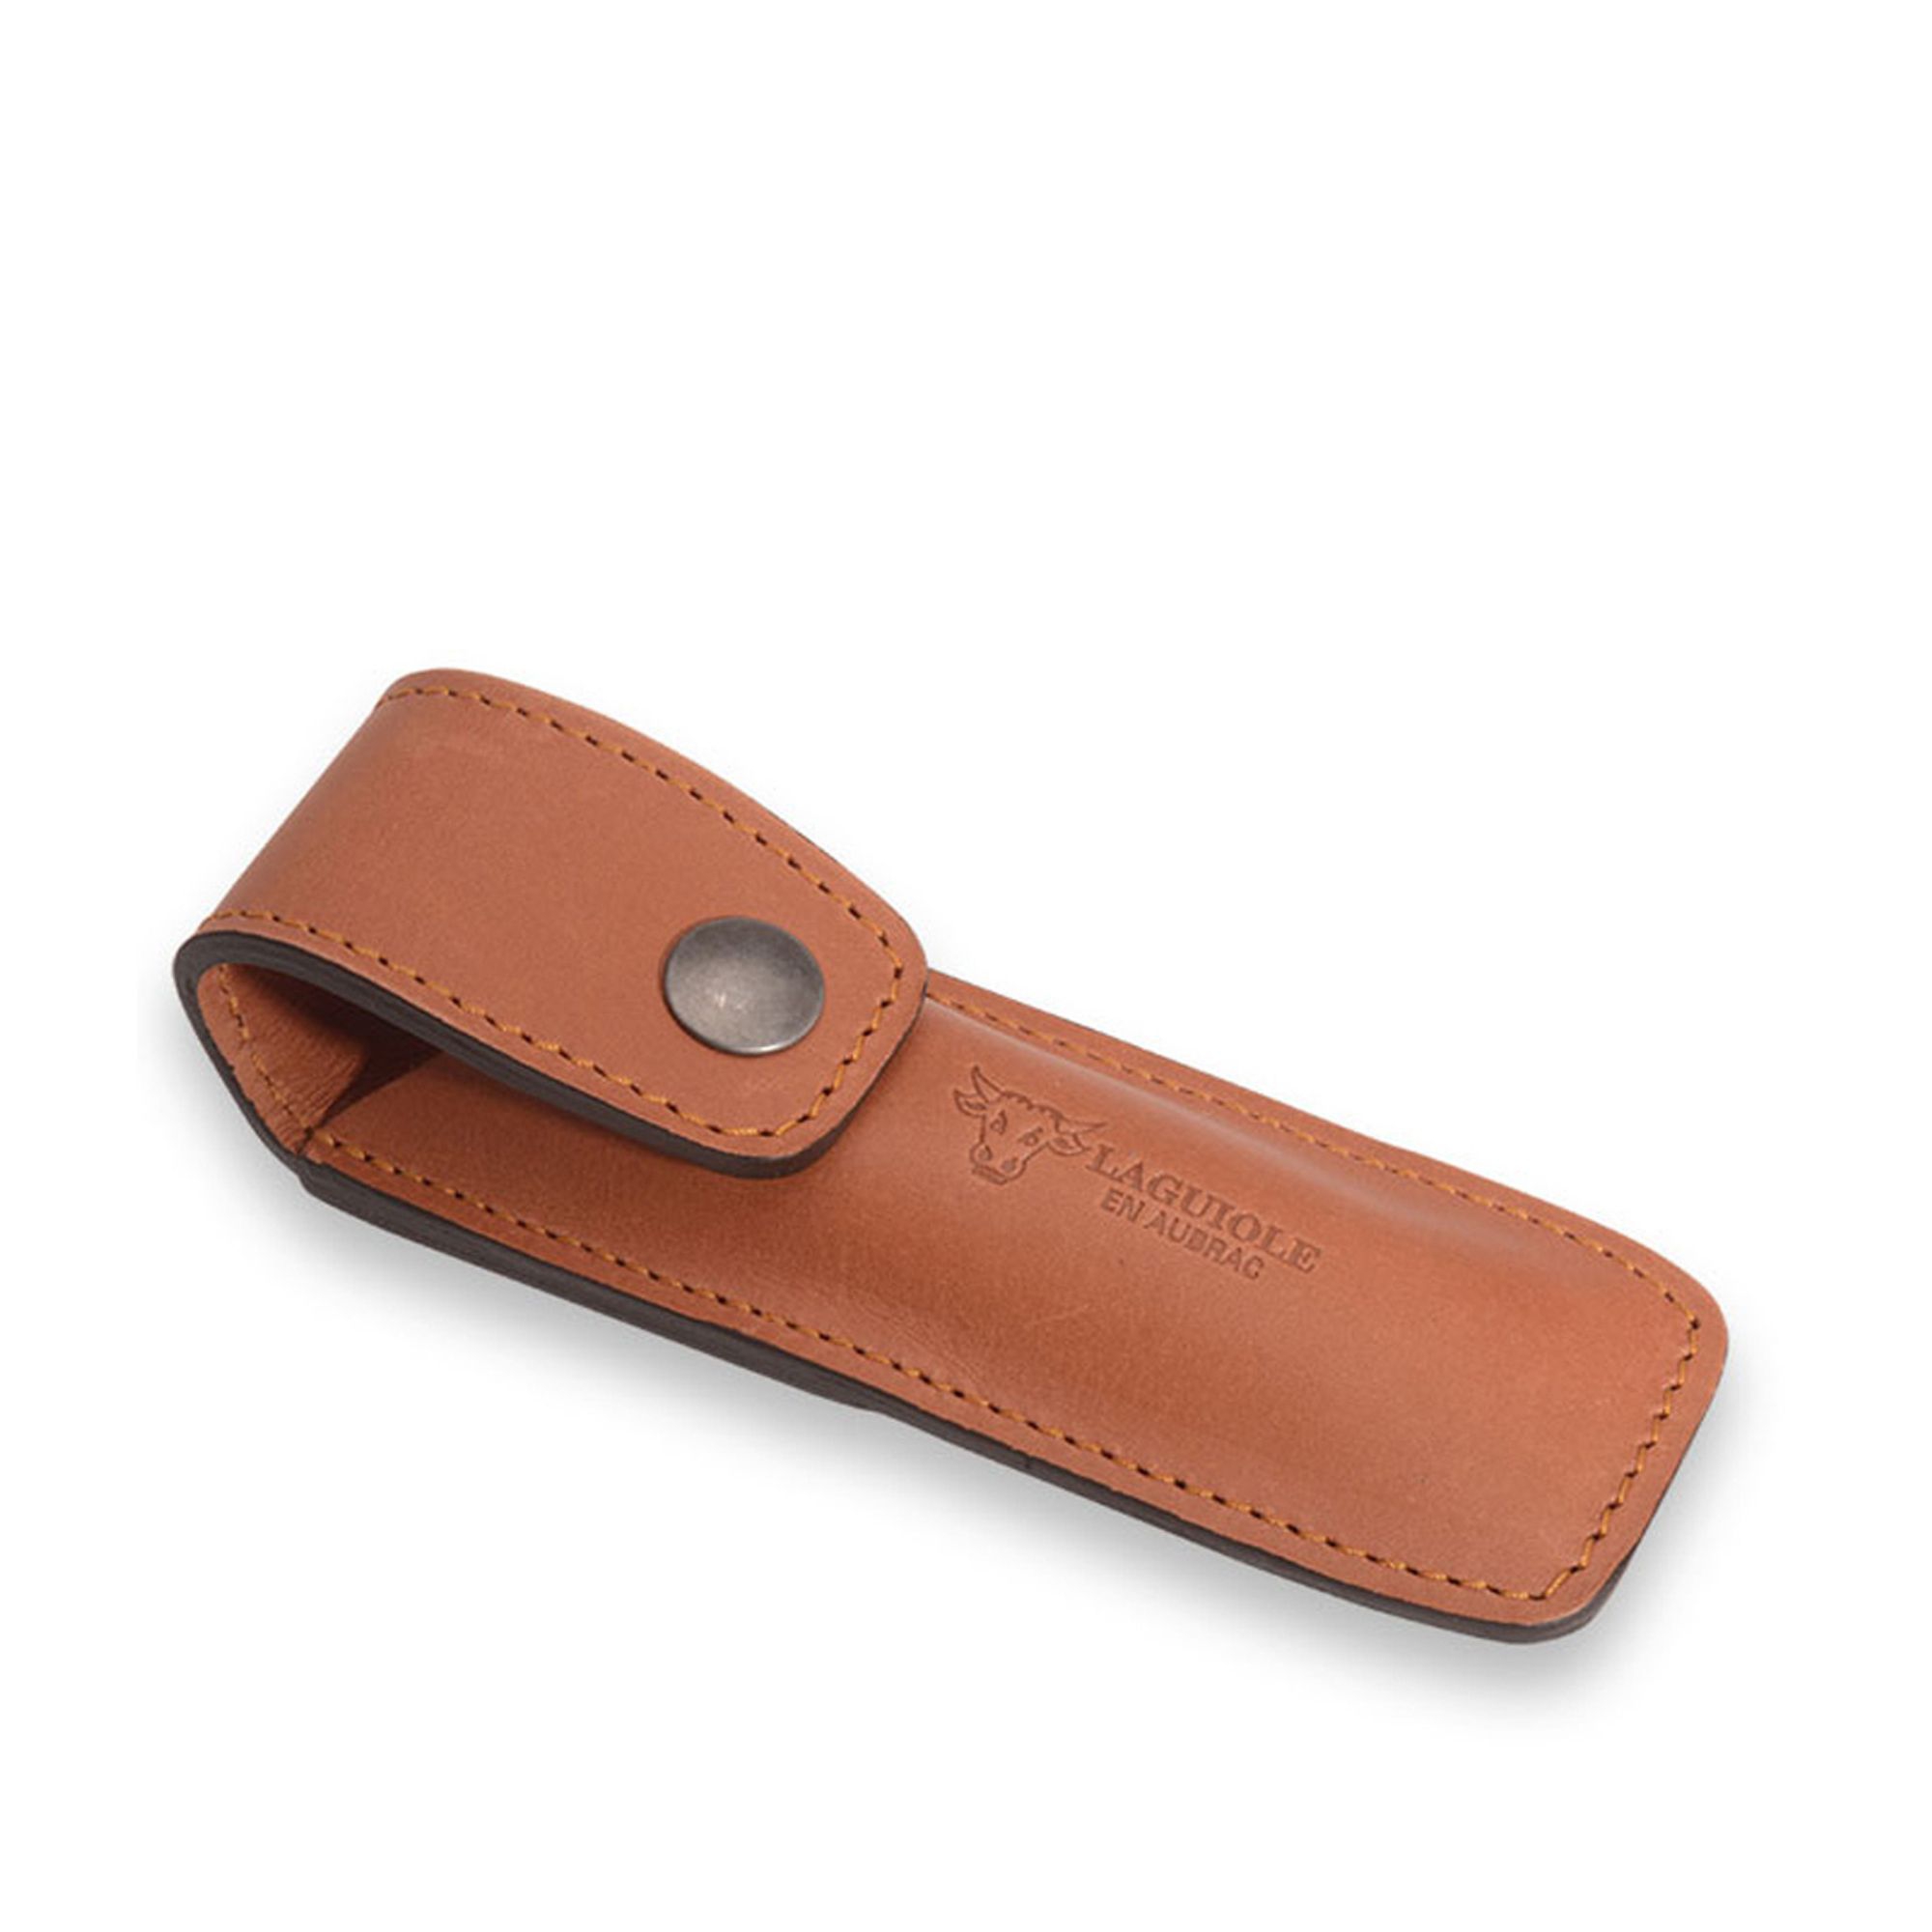 Laguiole - Leather case brown 13 cm